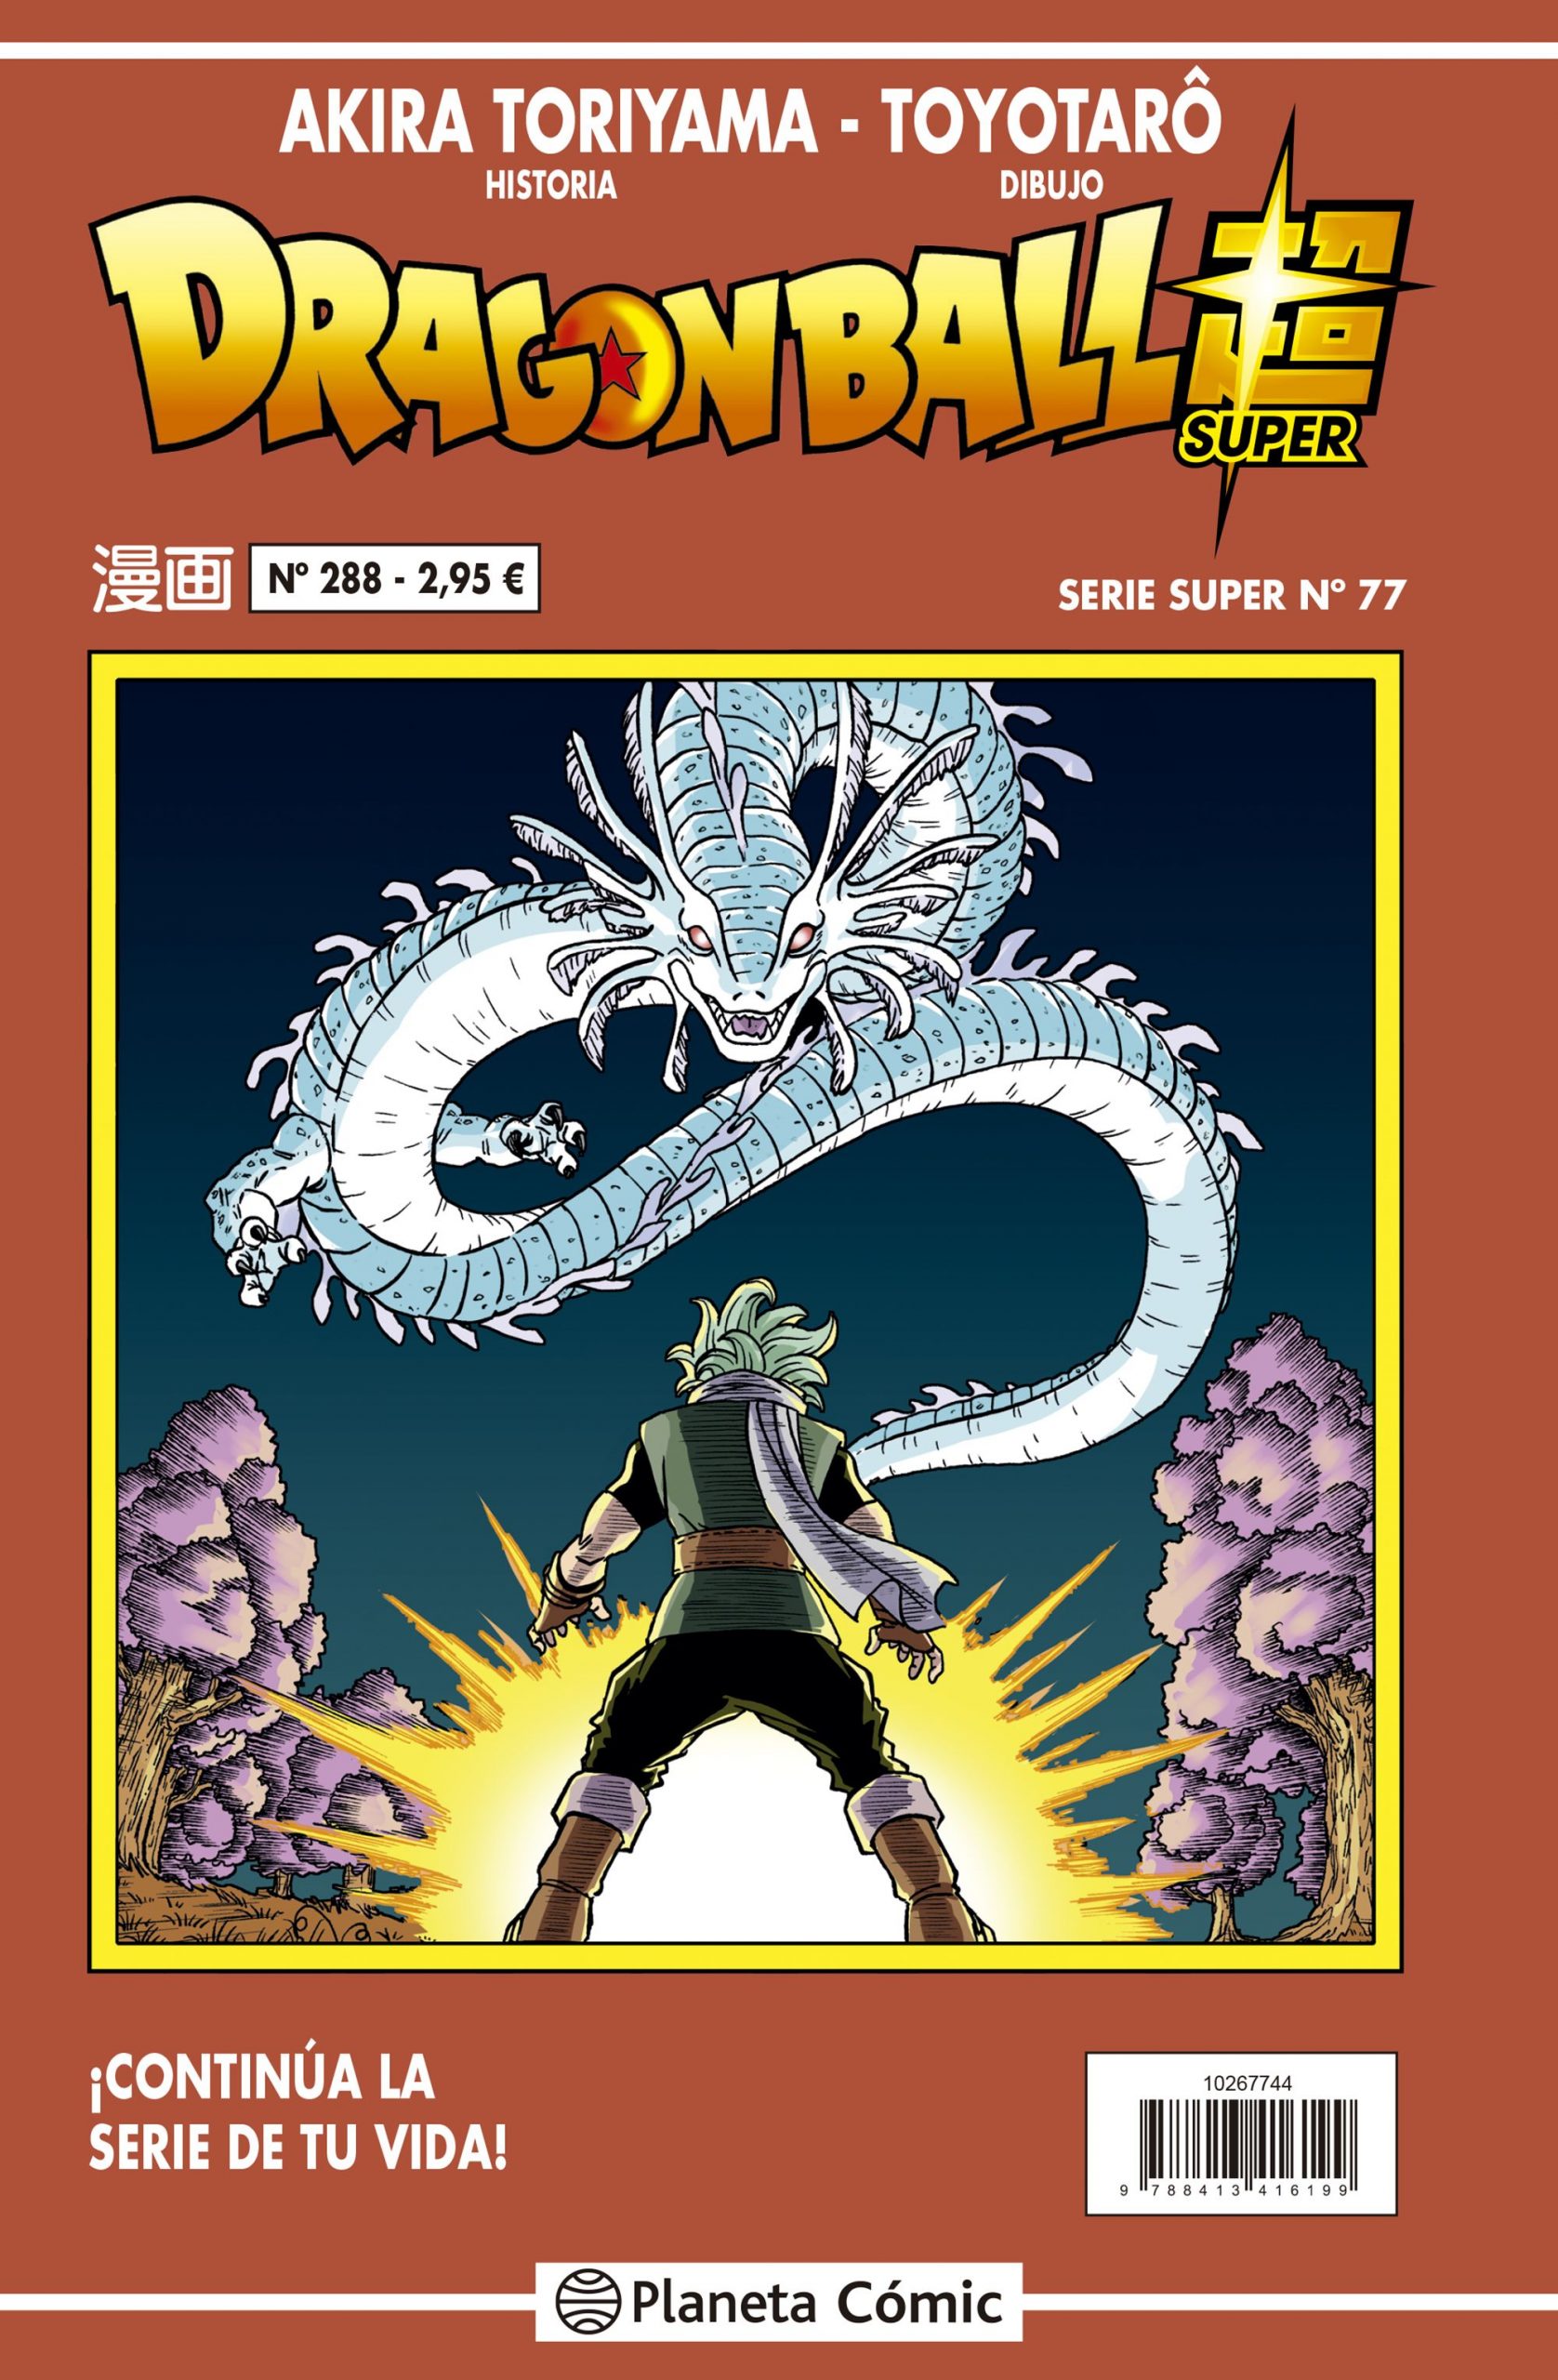 Dragon Ball Super, capítulo 95 ya disponible: dónde leer la más